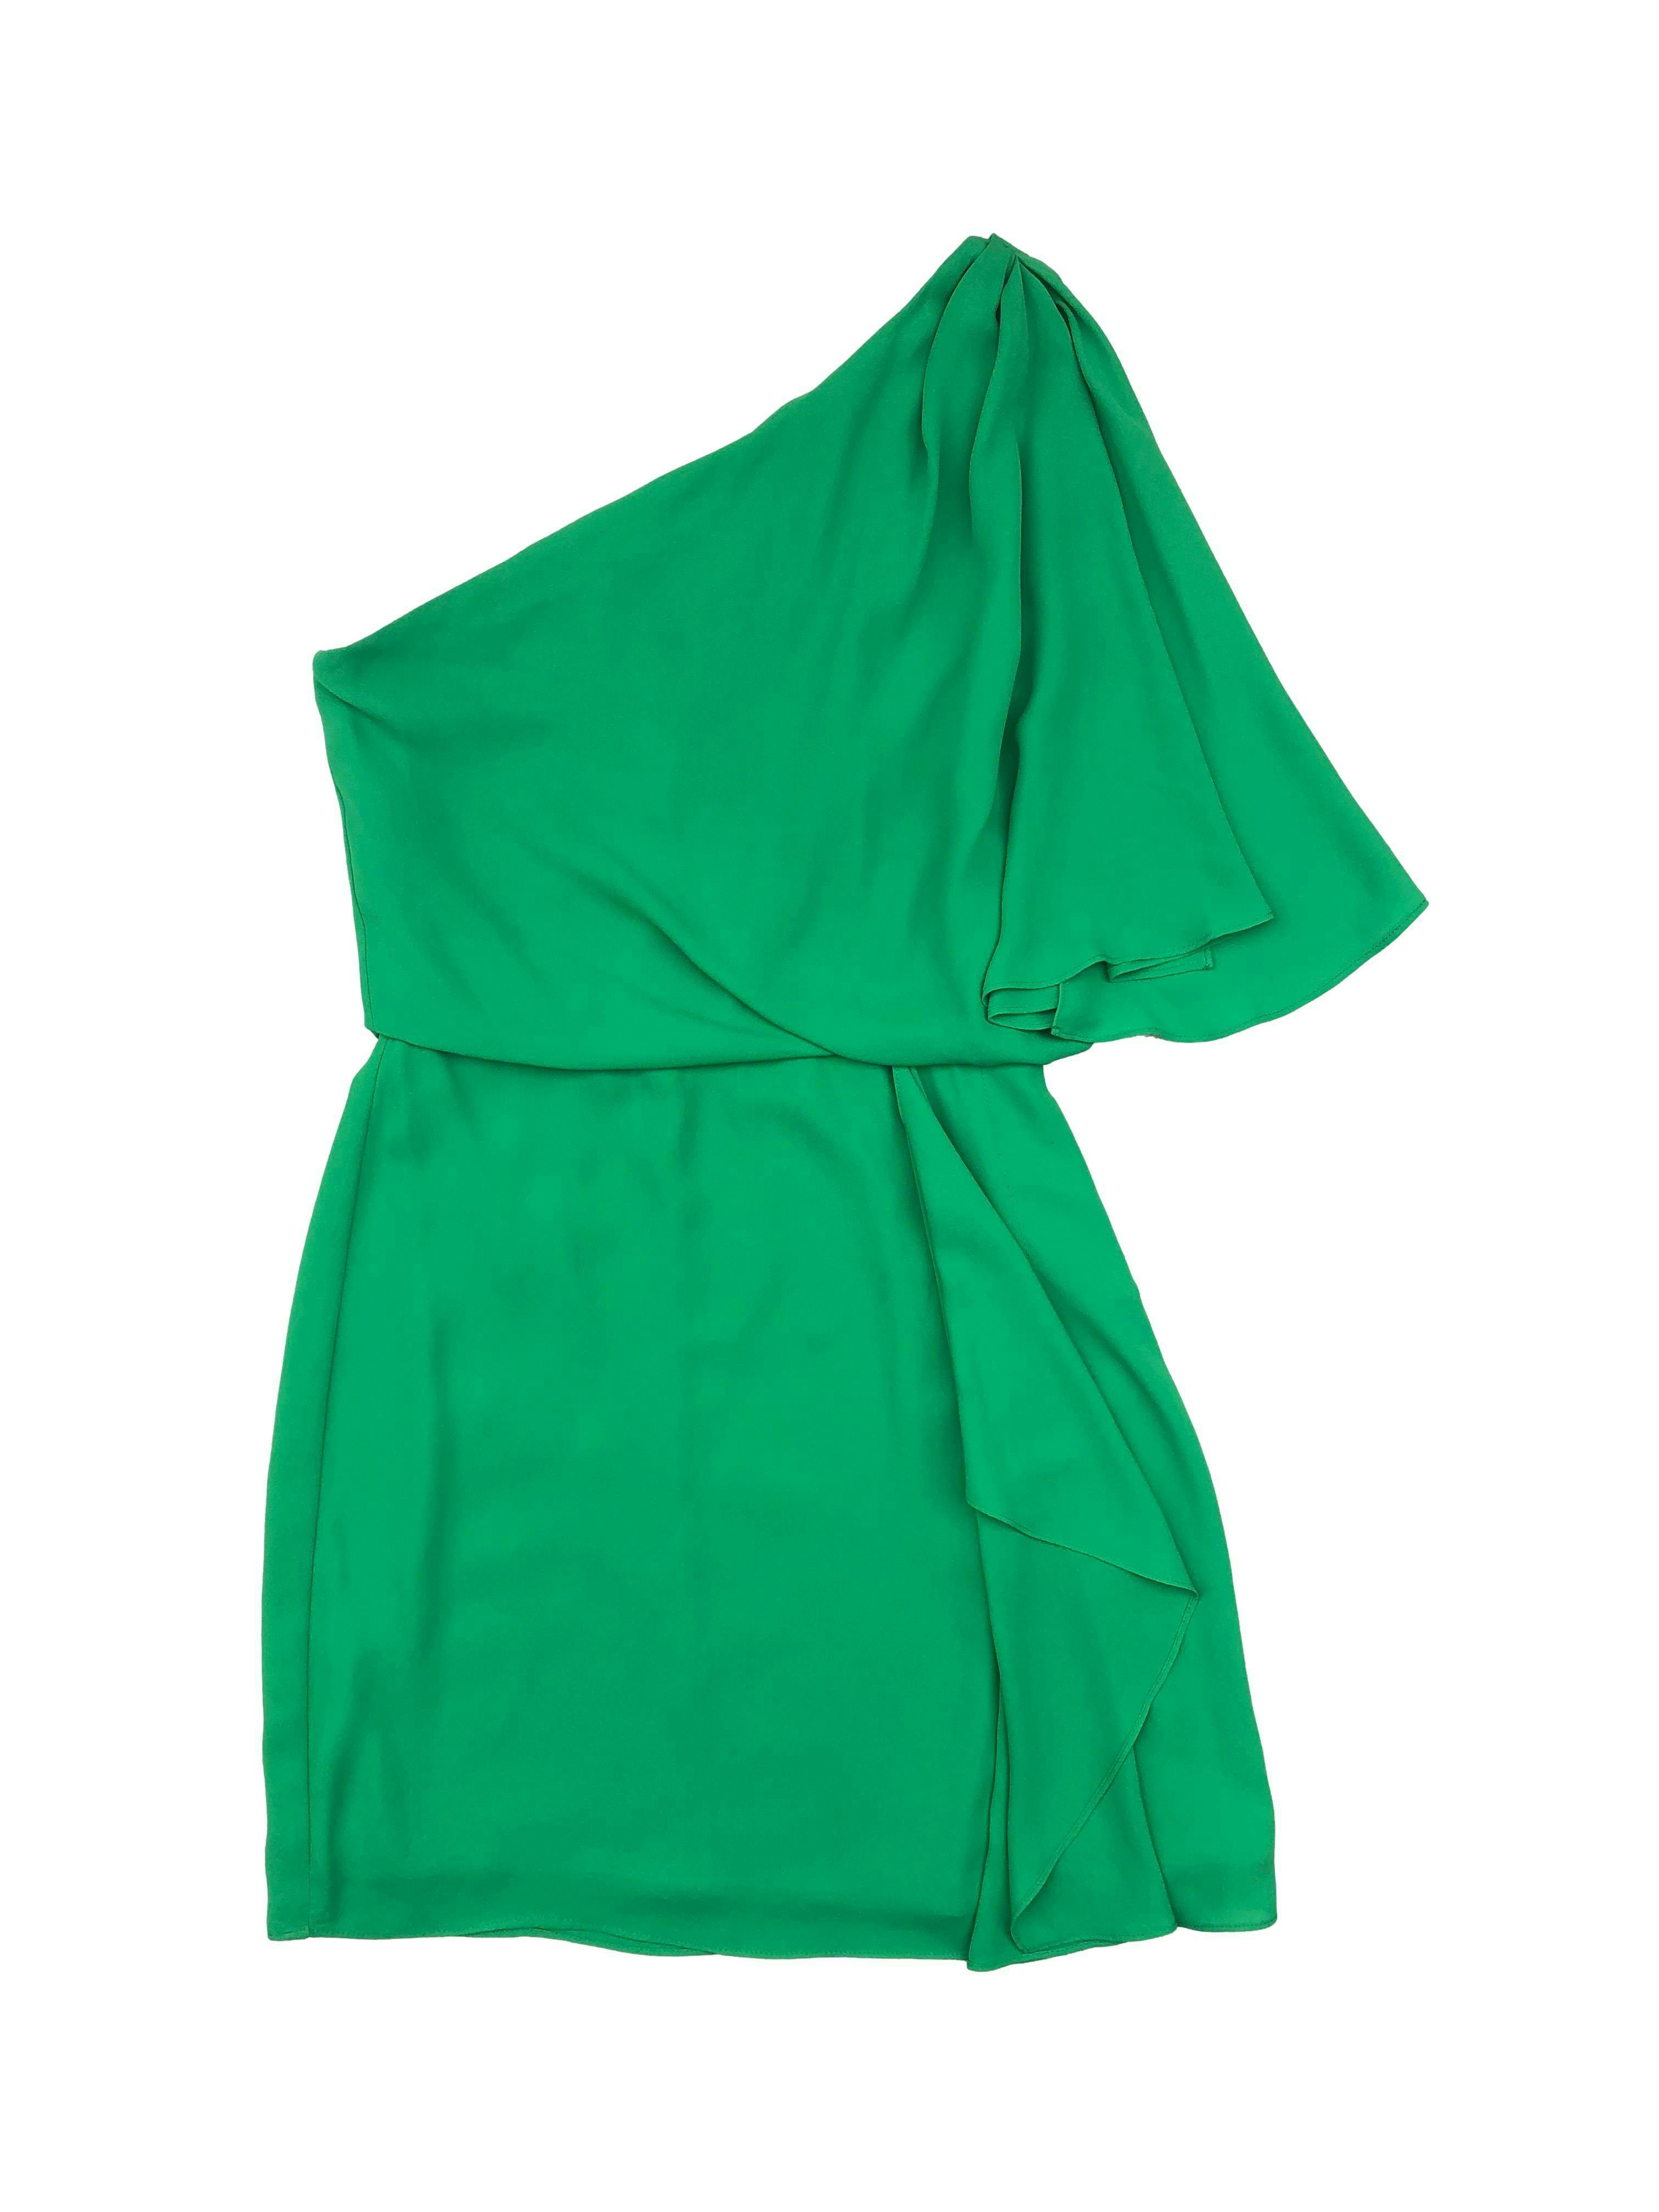 Vestido BCBG Maxazria one shoulder, de gasa verde, forrado, con cierre invisible lateral. Busto 80cm Cintura 60cm Largo 80cm. Precio original $200